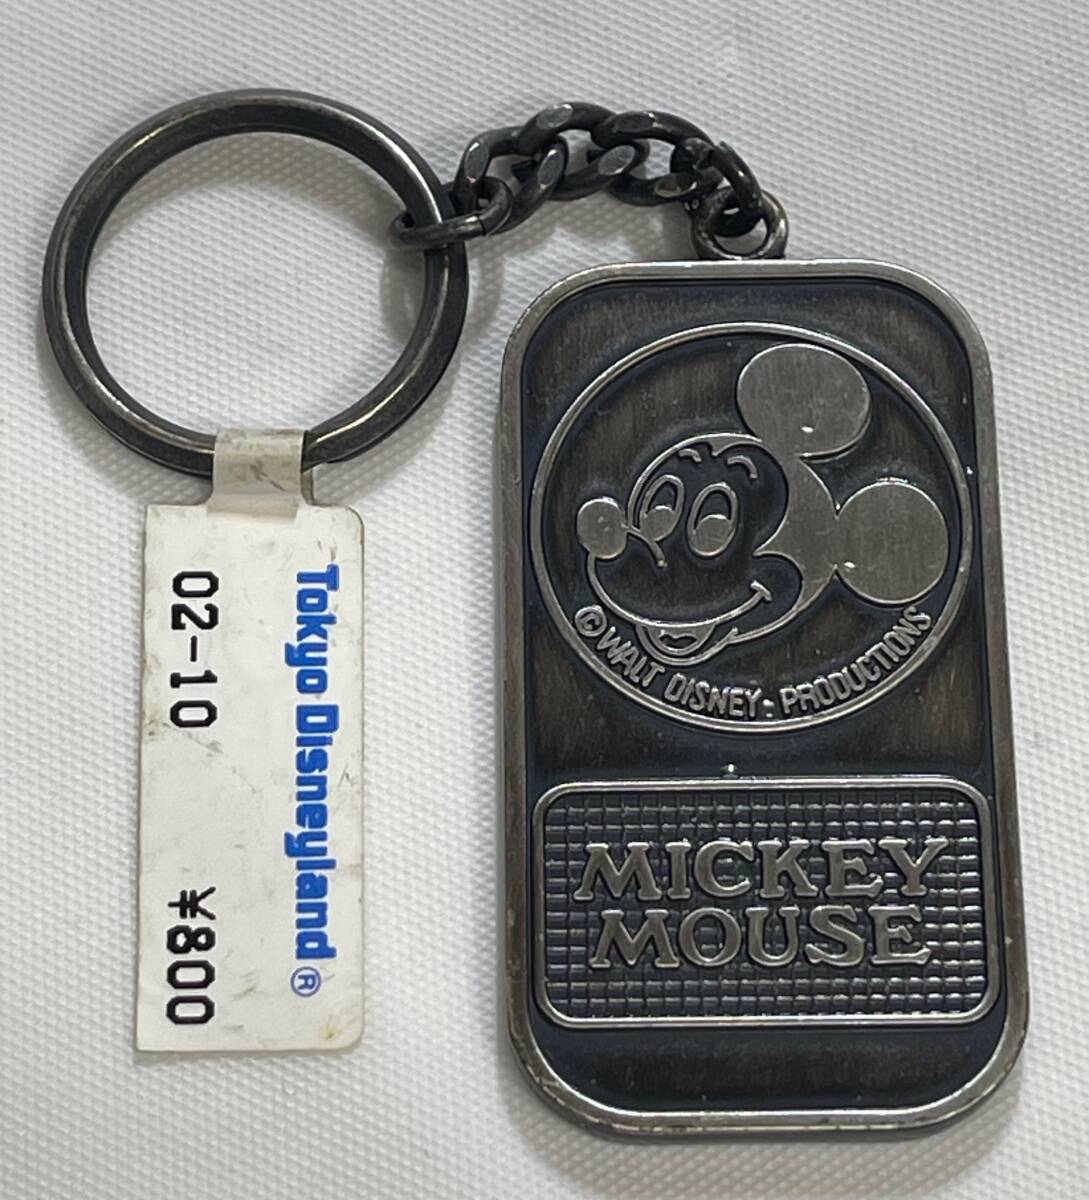 11962*1 иен старт брелок для ключа Tokyo Disney Land Mickey Mouse Tokyo Disneyland MCMLXXXV retro редкость редкий смешанные товары . земля производство 